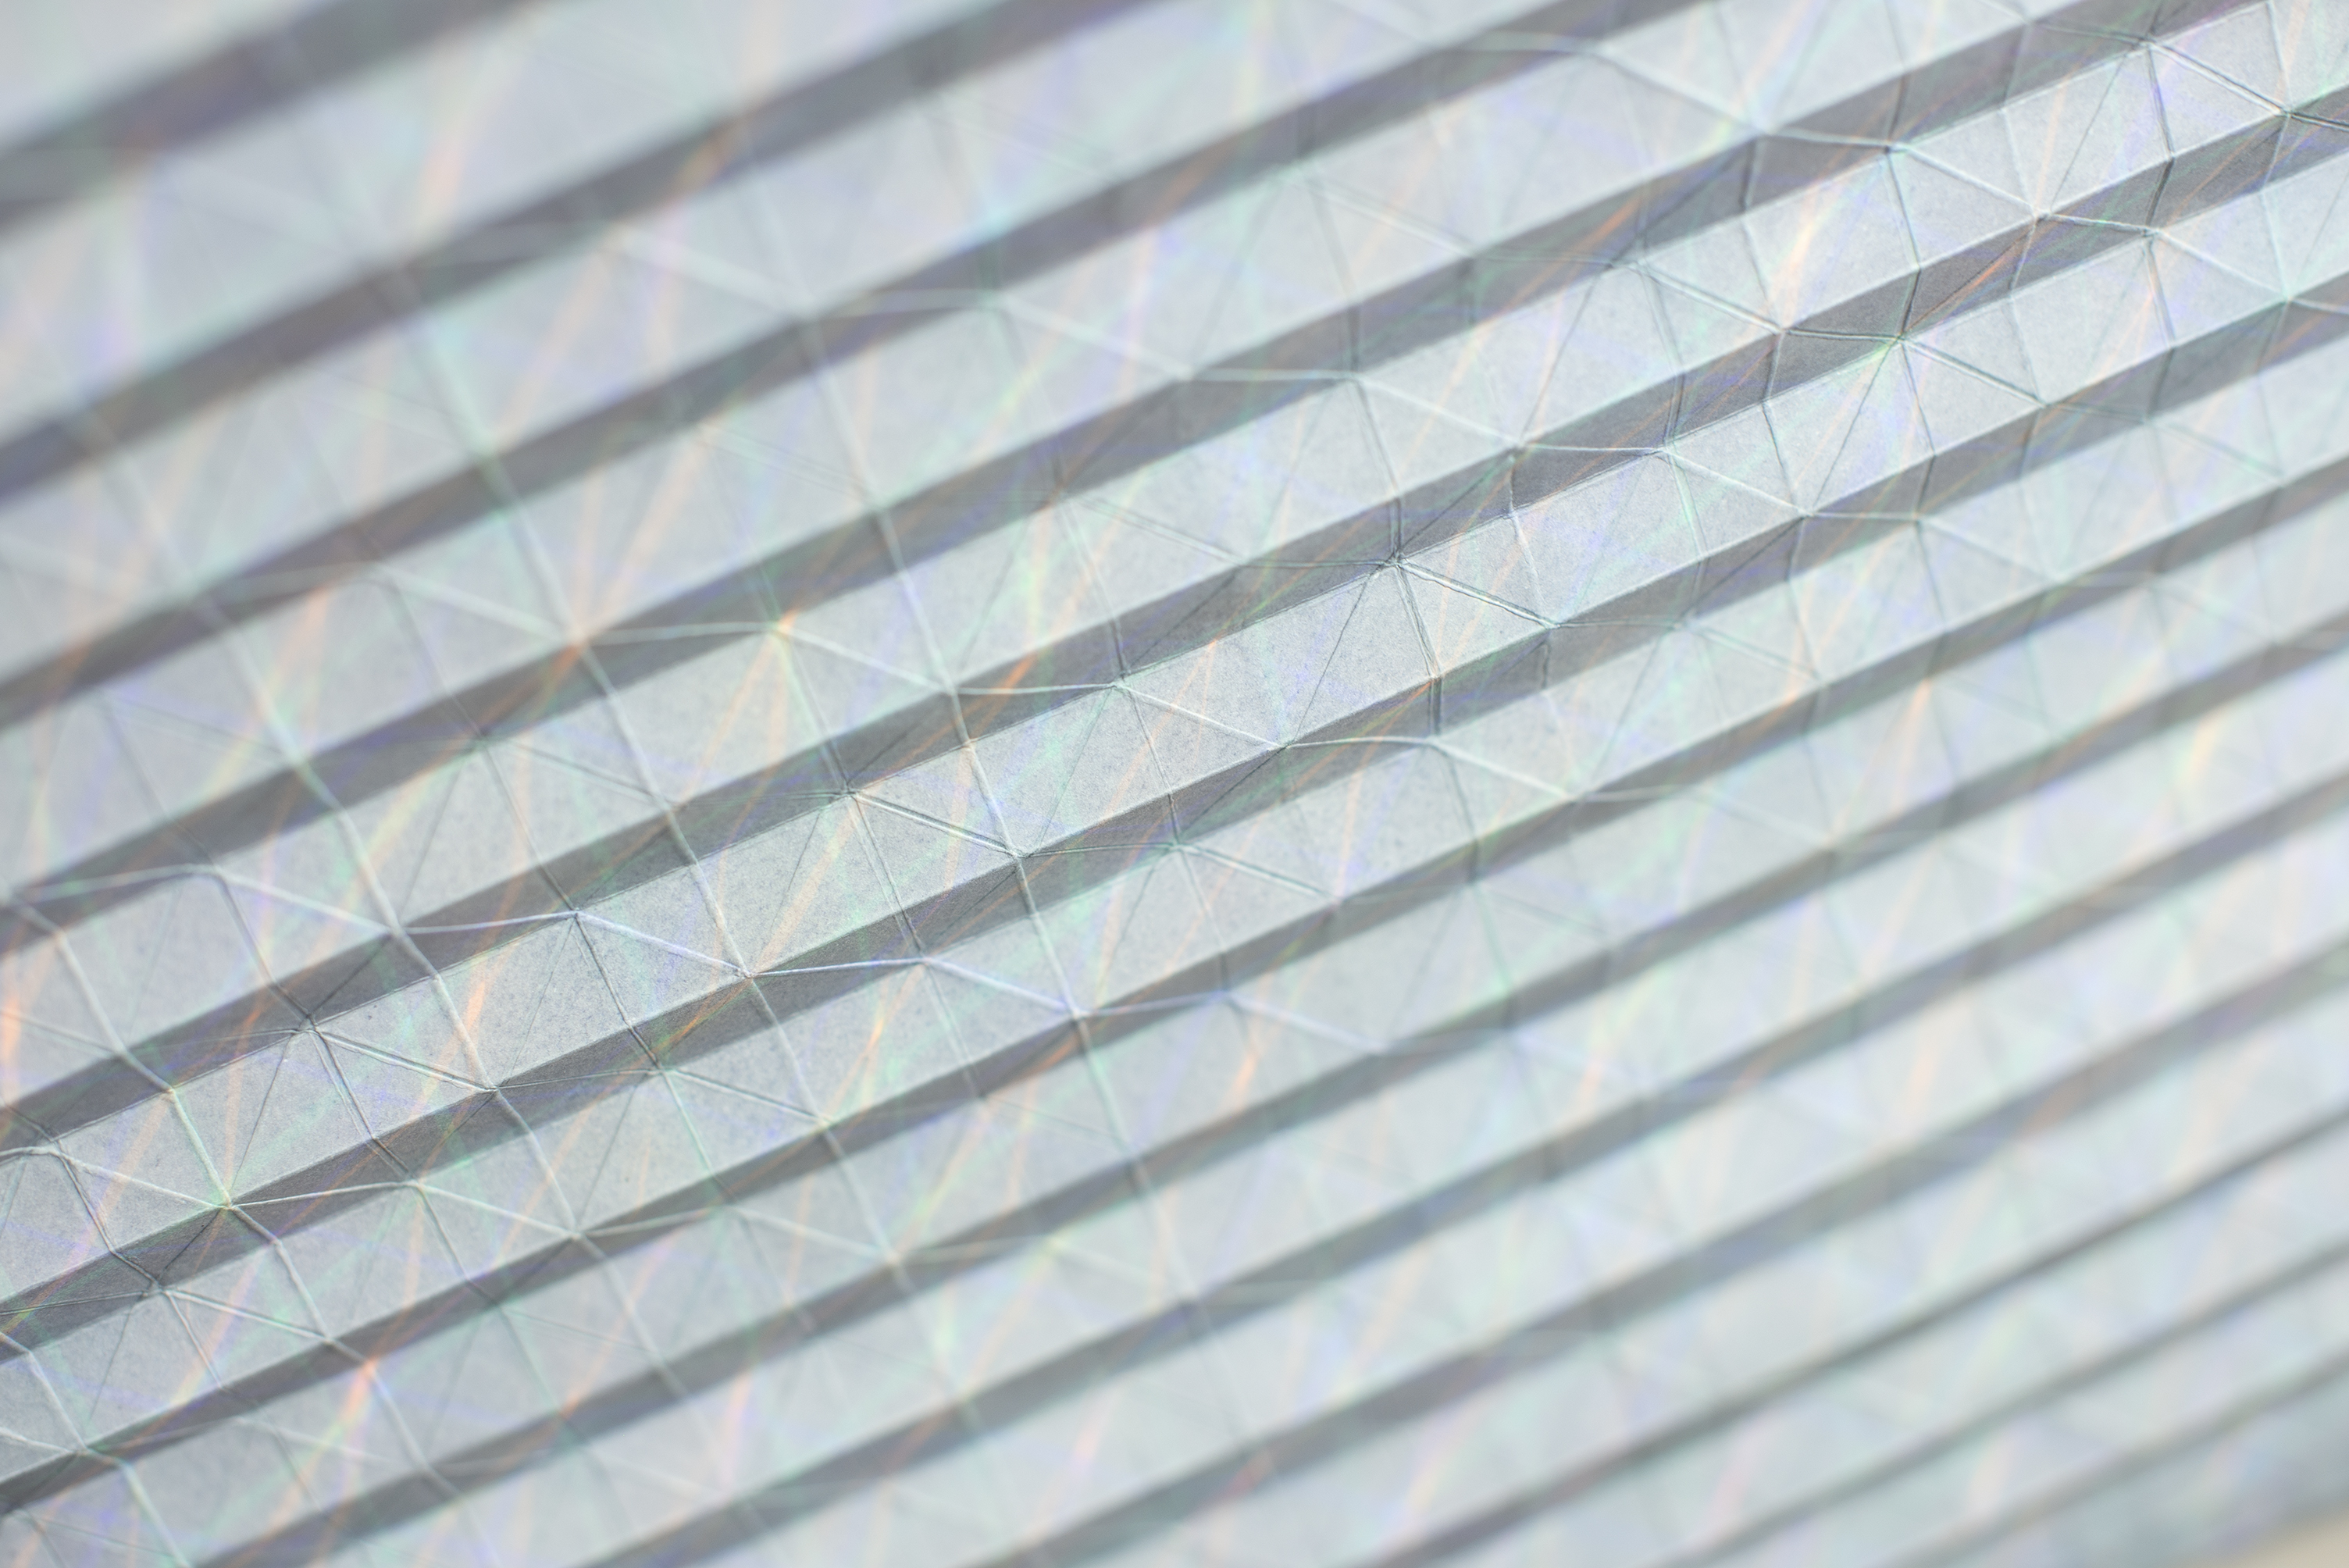 LUISE VON ROHDEN Faltung (6d grb/l) (Detail), 2020, farbige Tusche und Faltung auf Papier, 78 x 58 cm